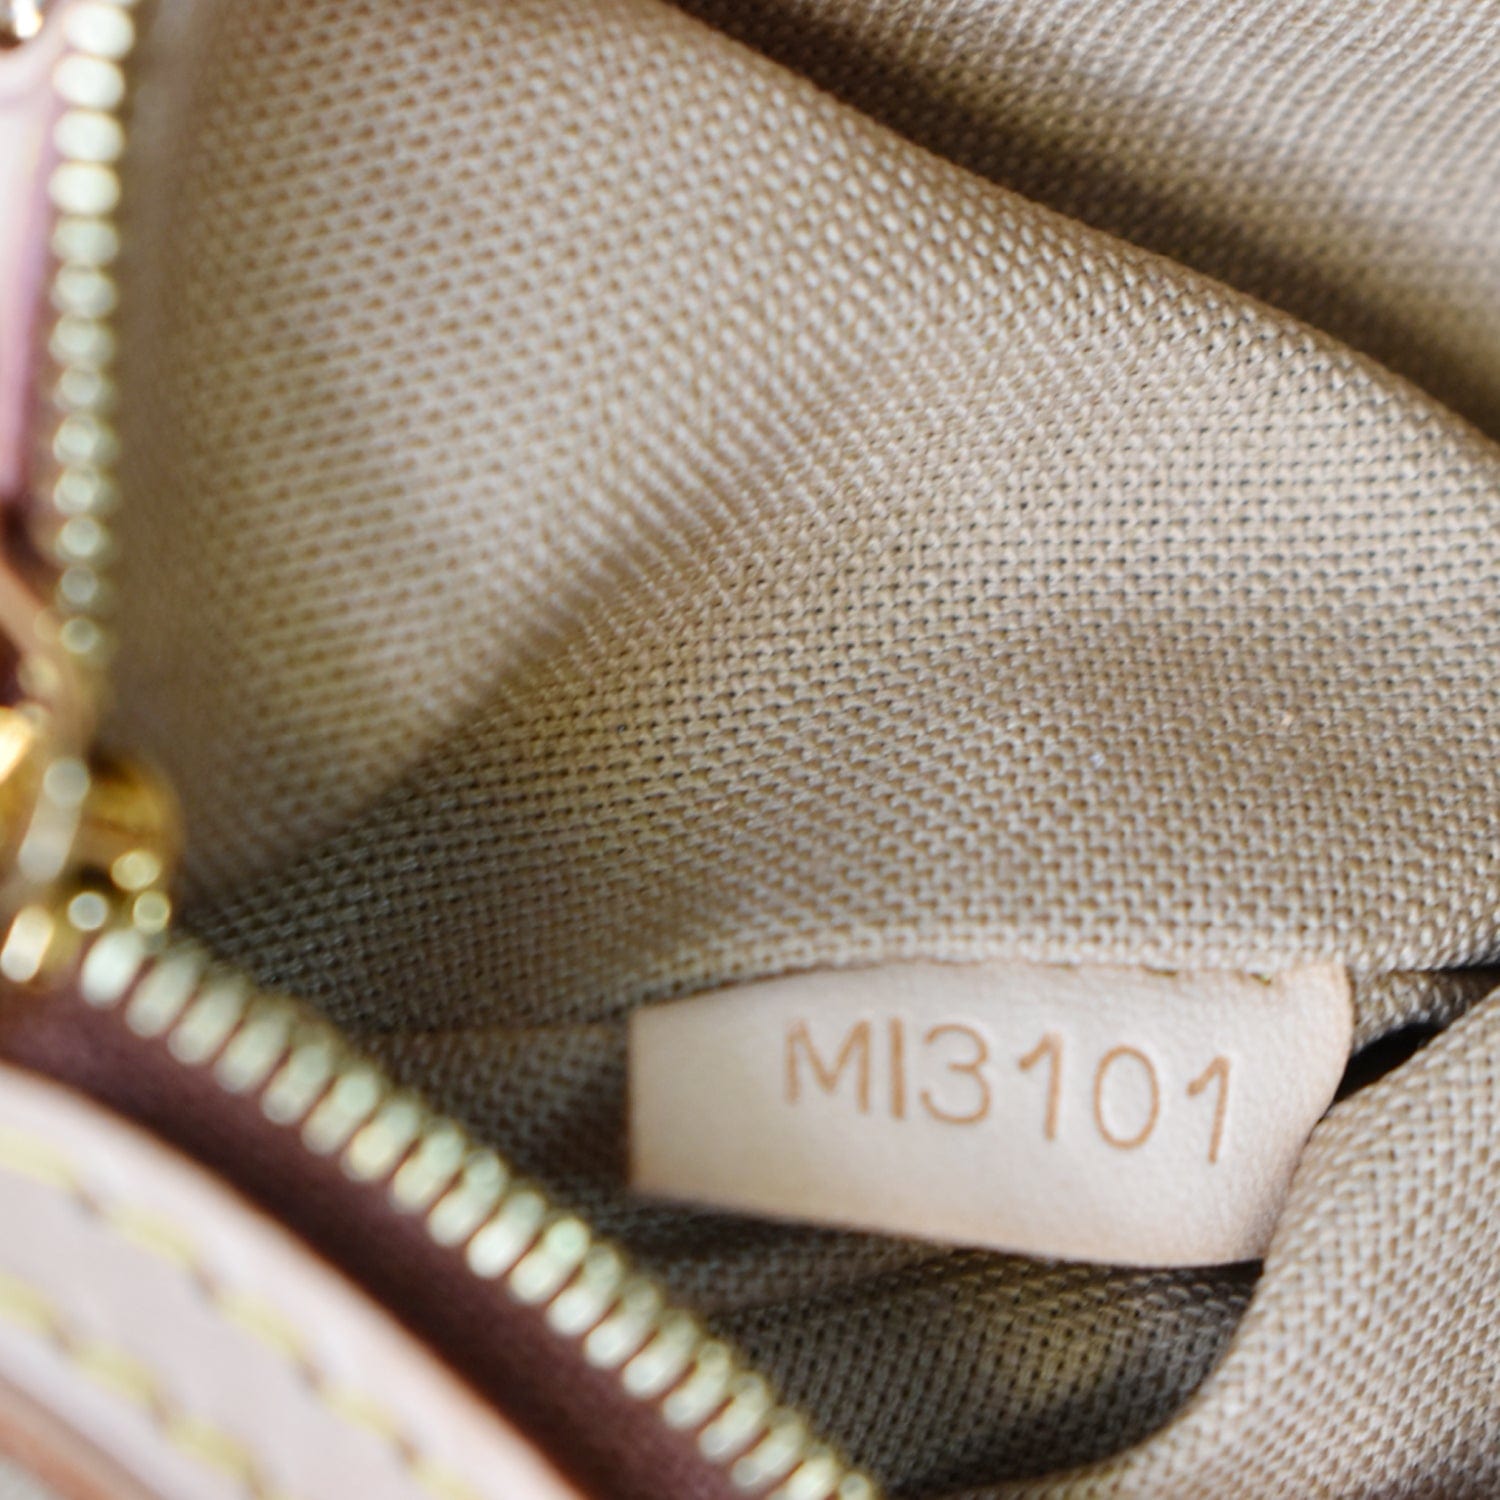 Delightful cloth handbag Louis Vuitton Brown in Cloth - 35908584